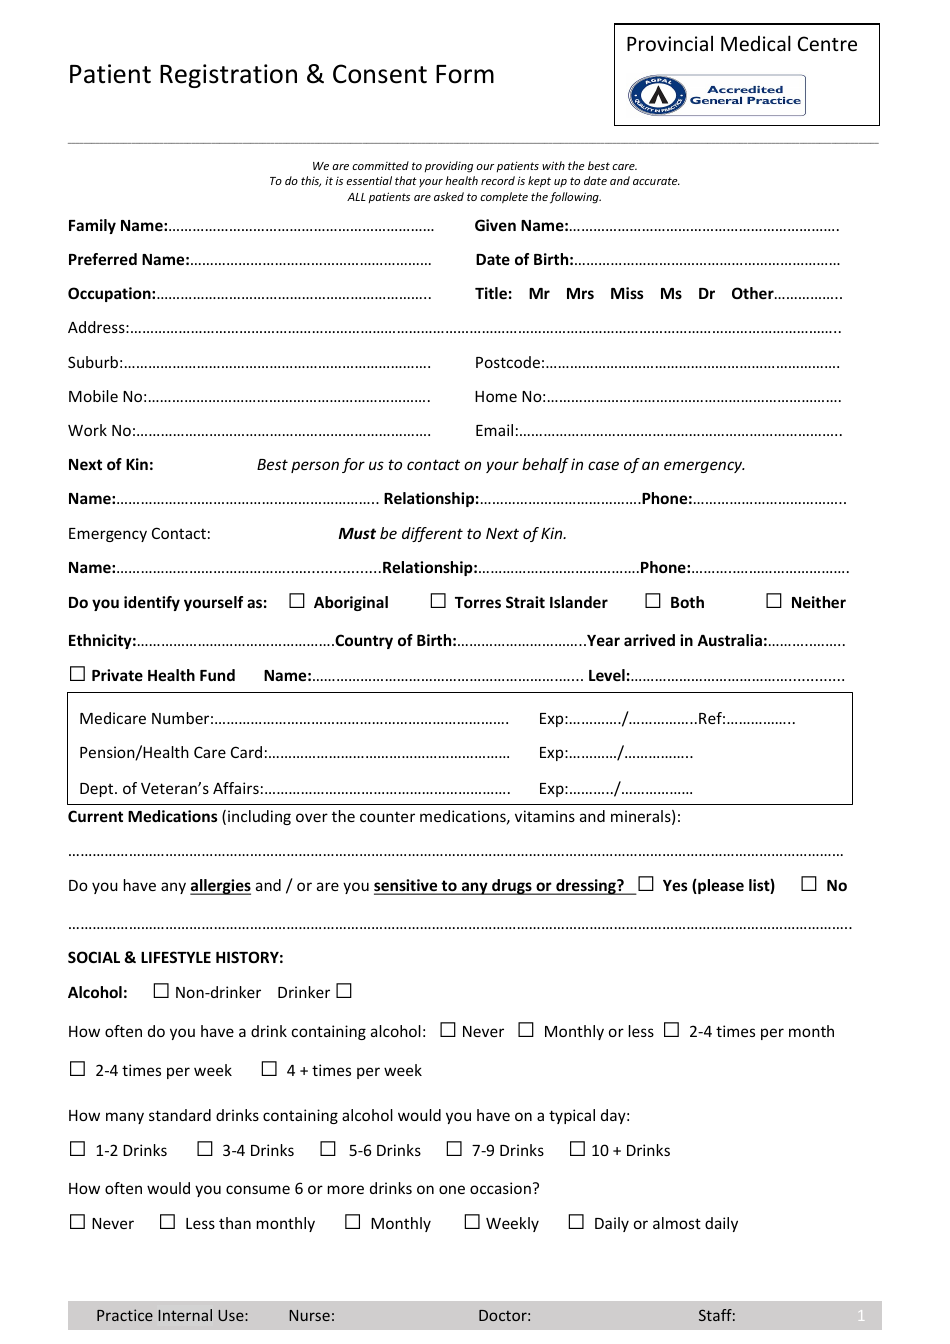 Patient Registration  Consent Form - Provincial Medical Centre, Page 1